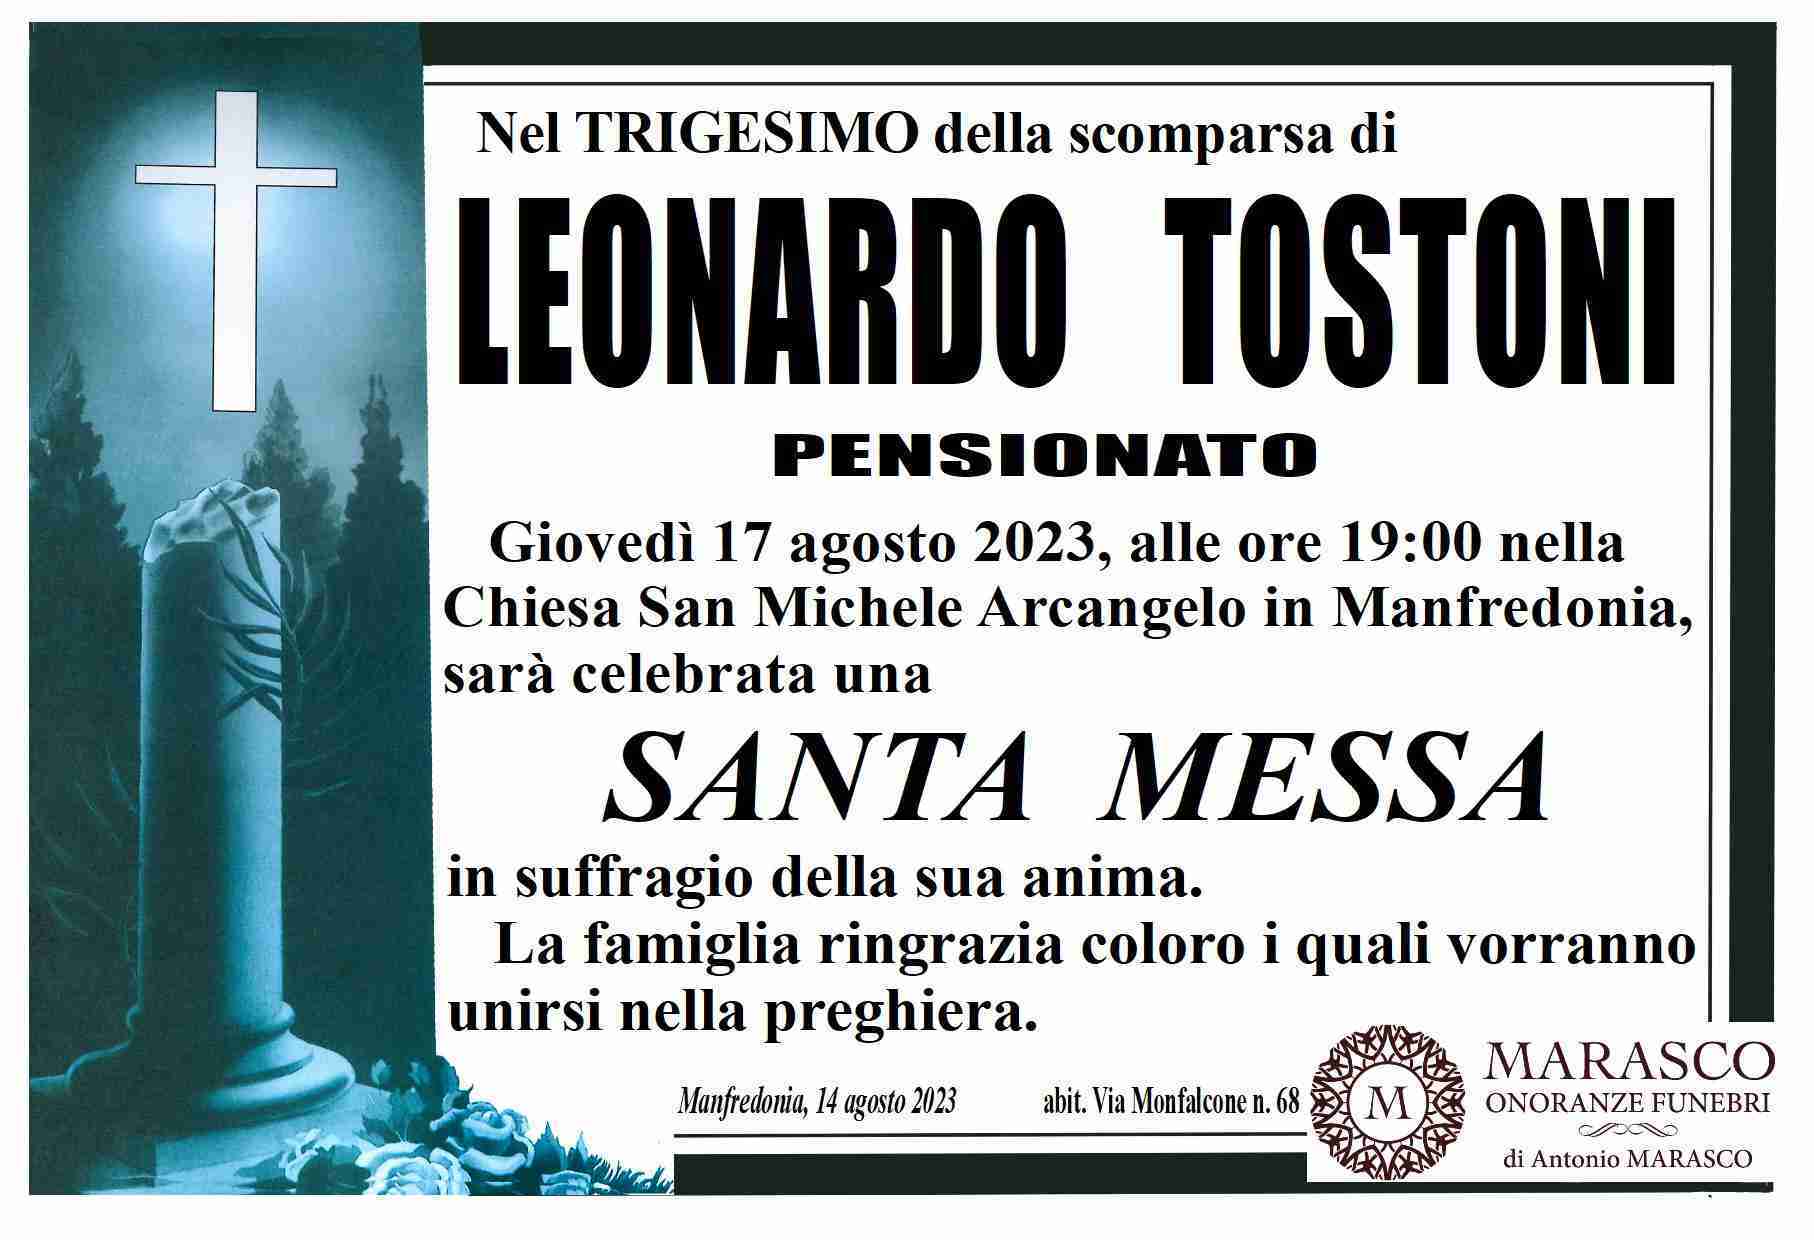 Leonardo Tostoni